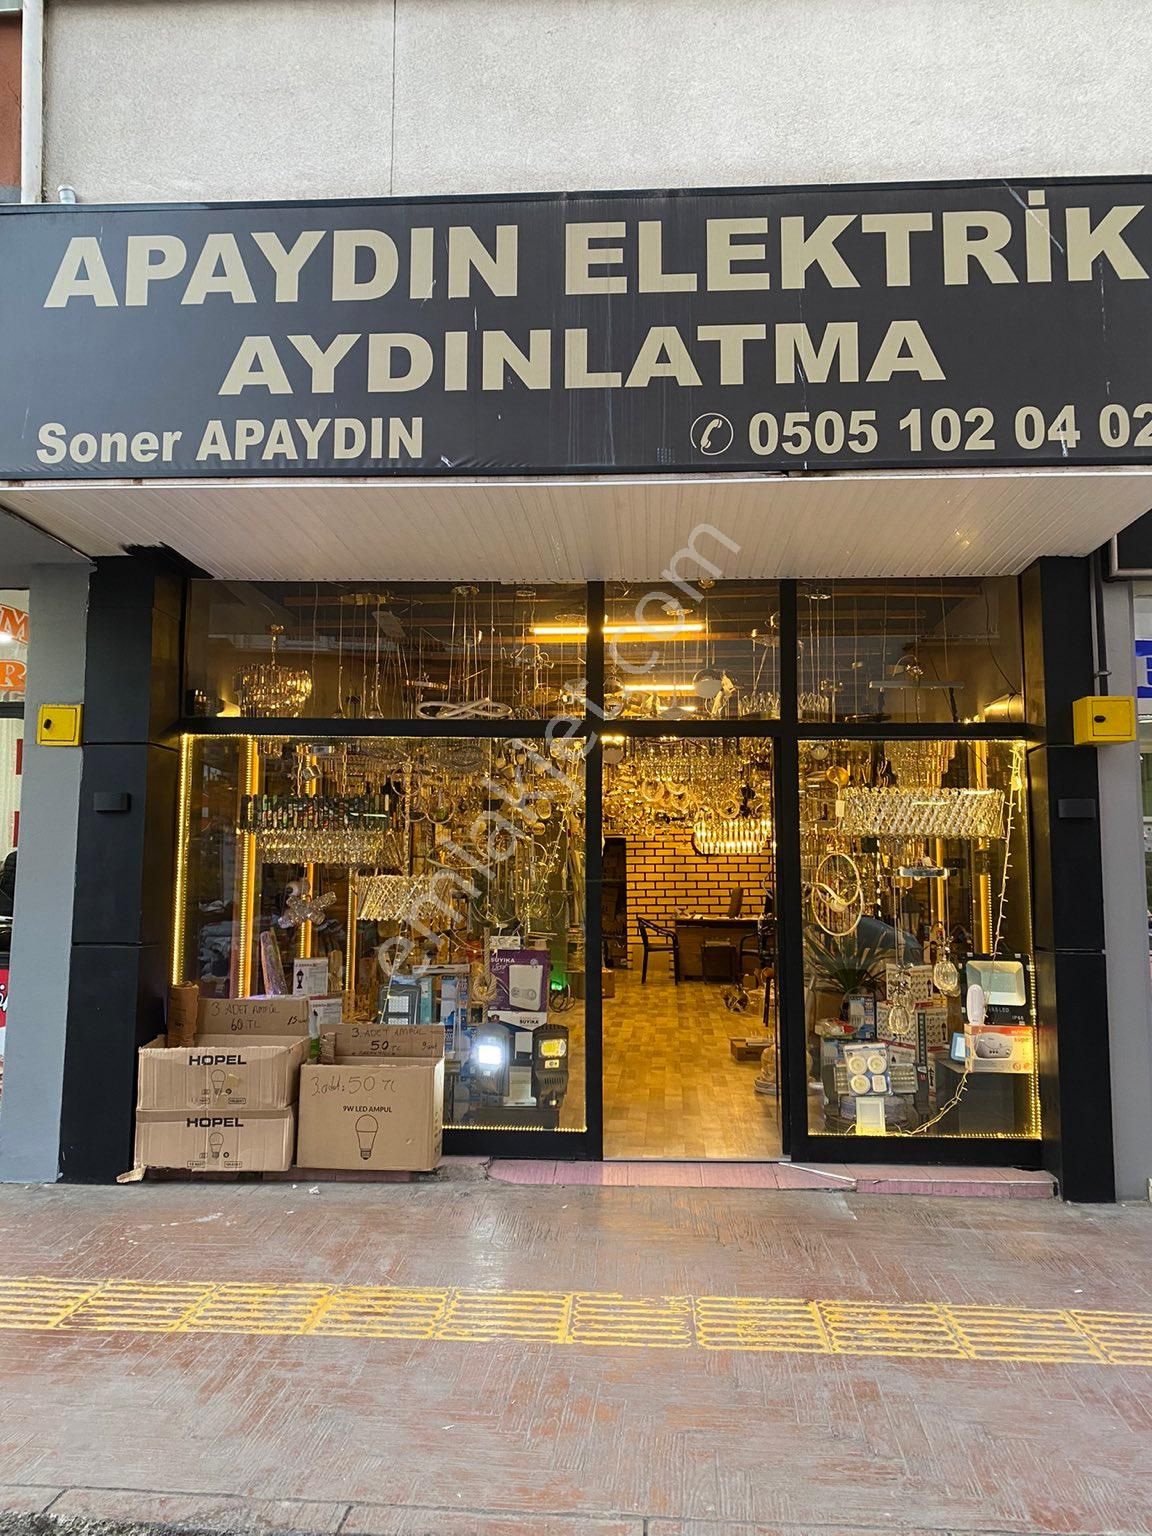 Bulancak İhsaniye Satılık Dükkan & Mağaza Arsev gayrimenkulden cadde üzerinde satılık dükkan